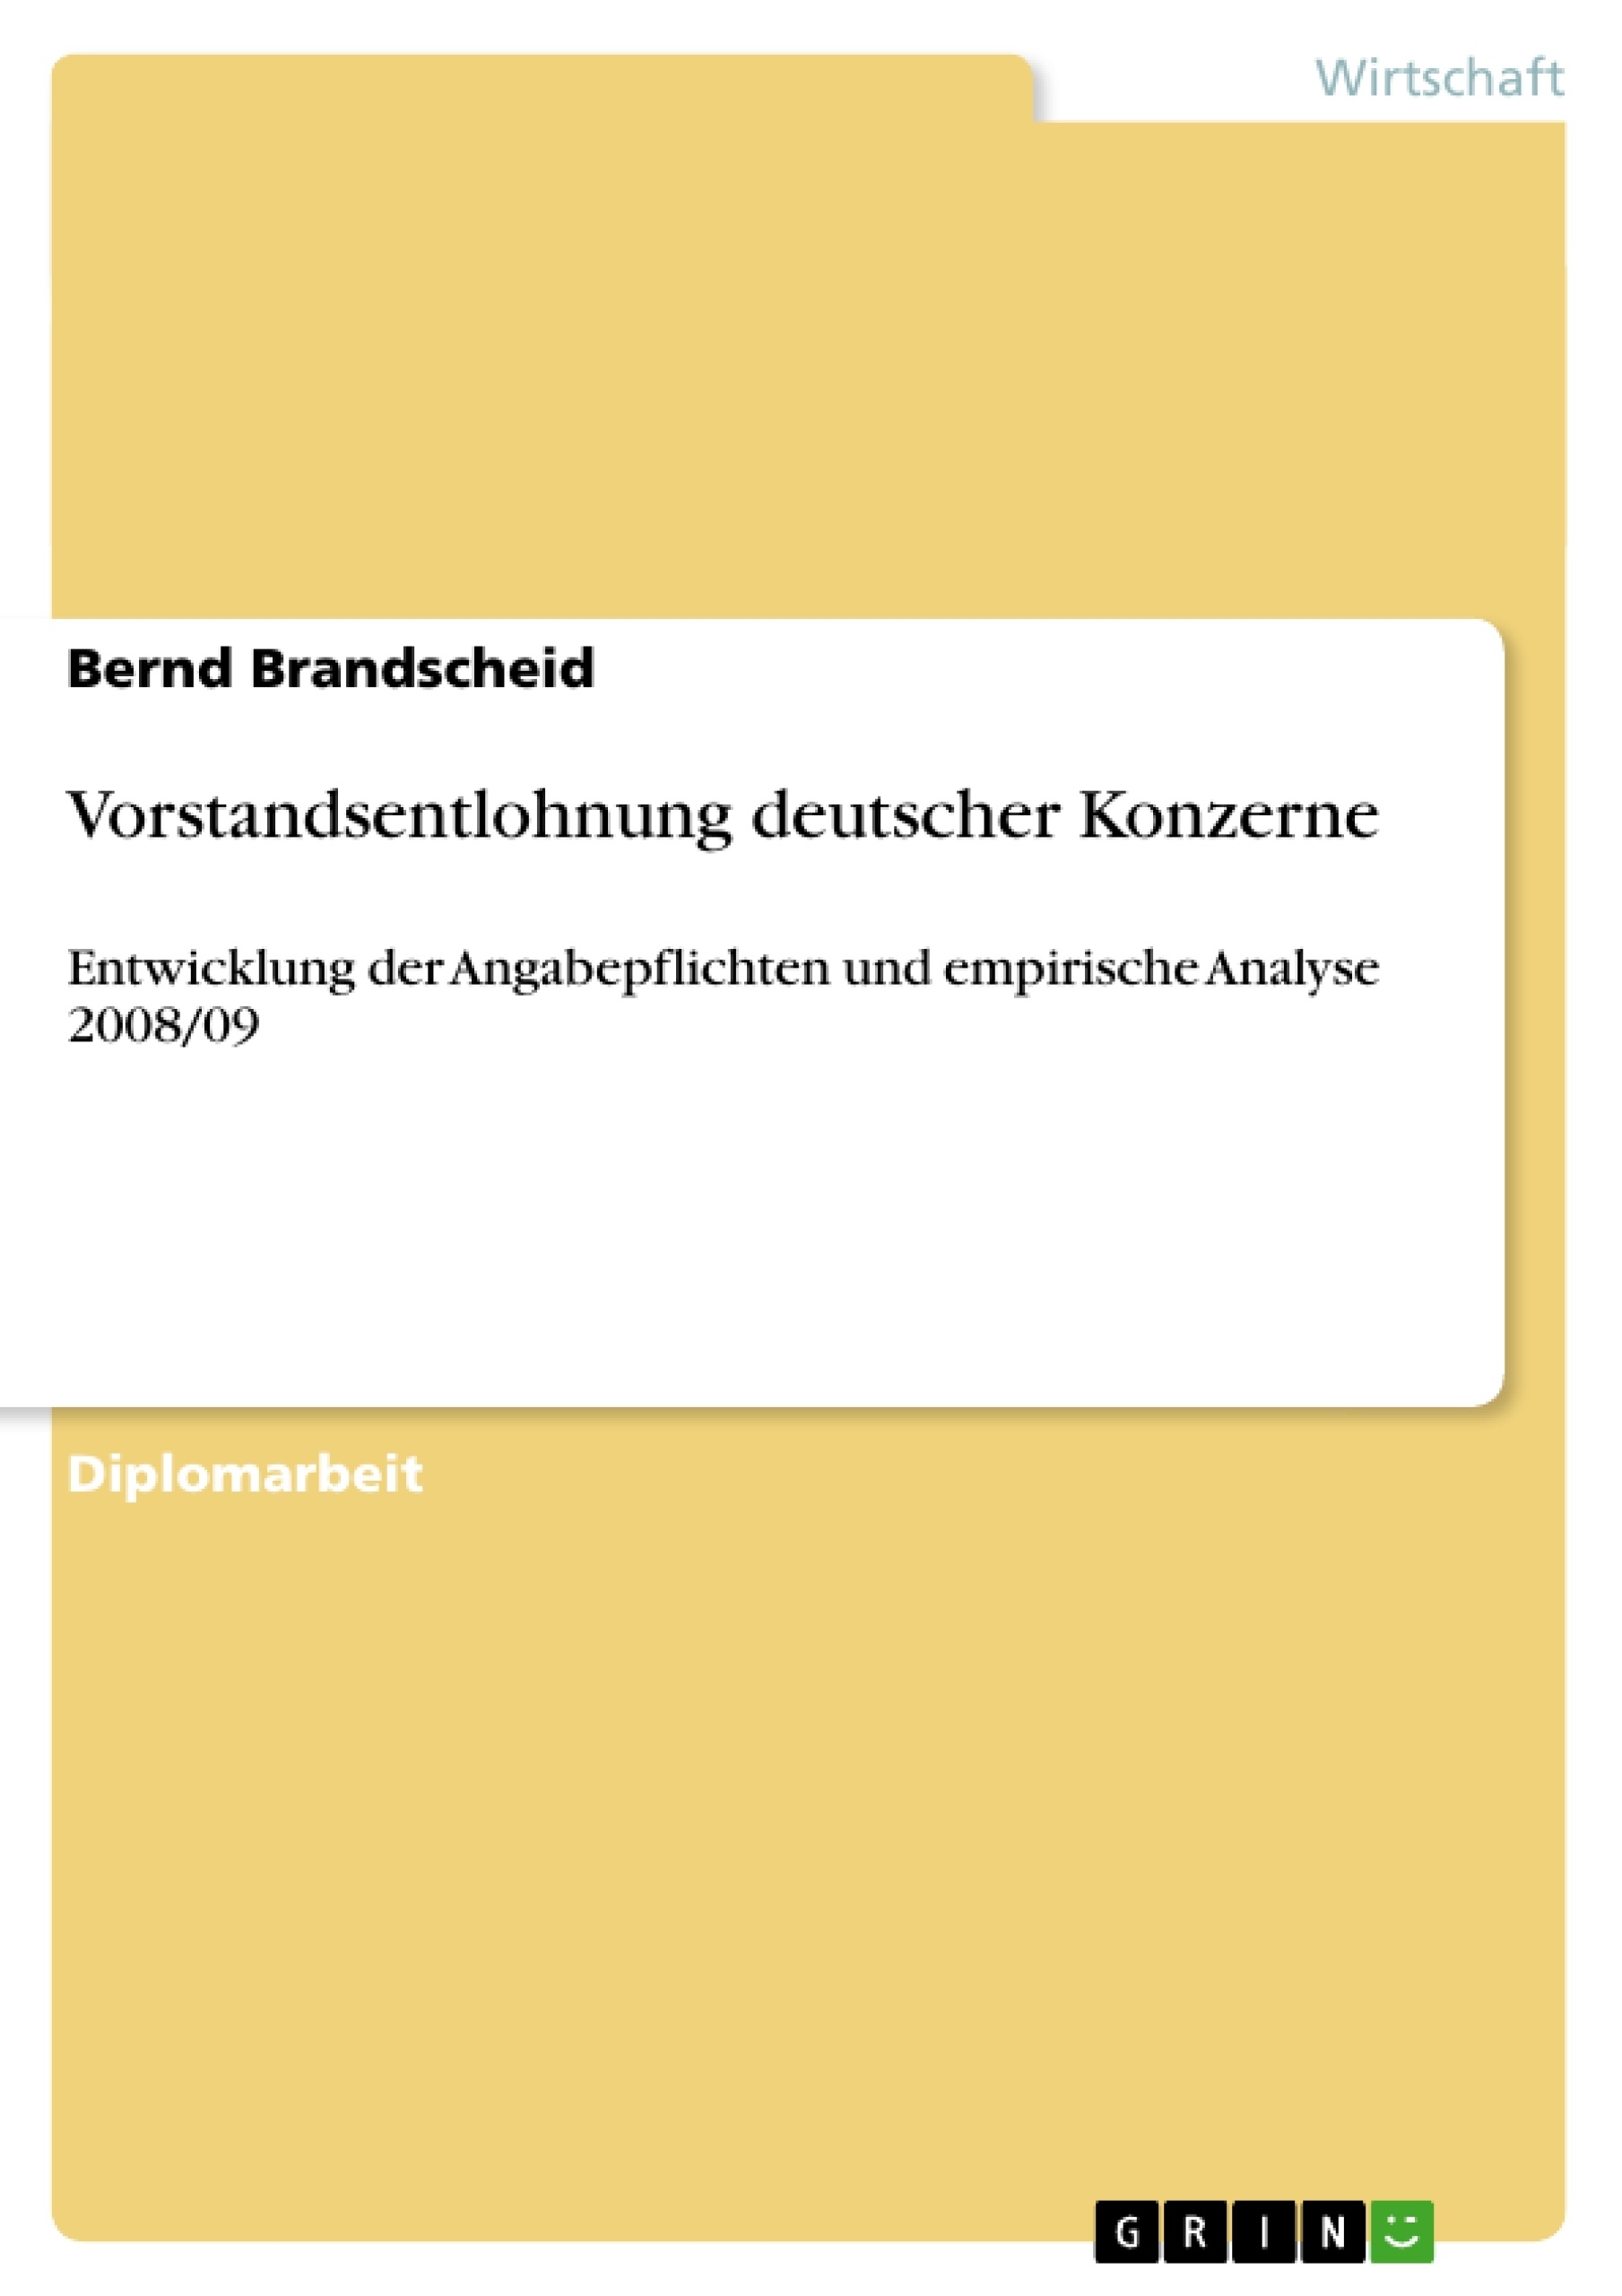 Titre: Vorstandsentlohnung deutscher Konzerne